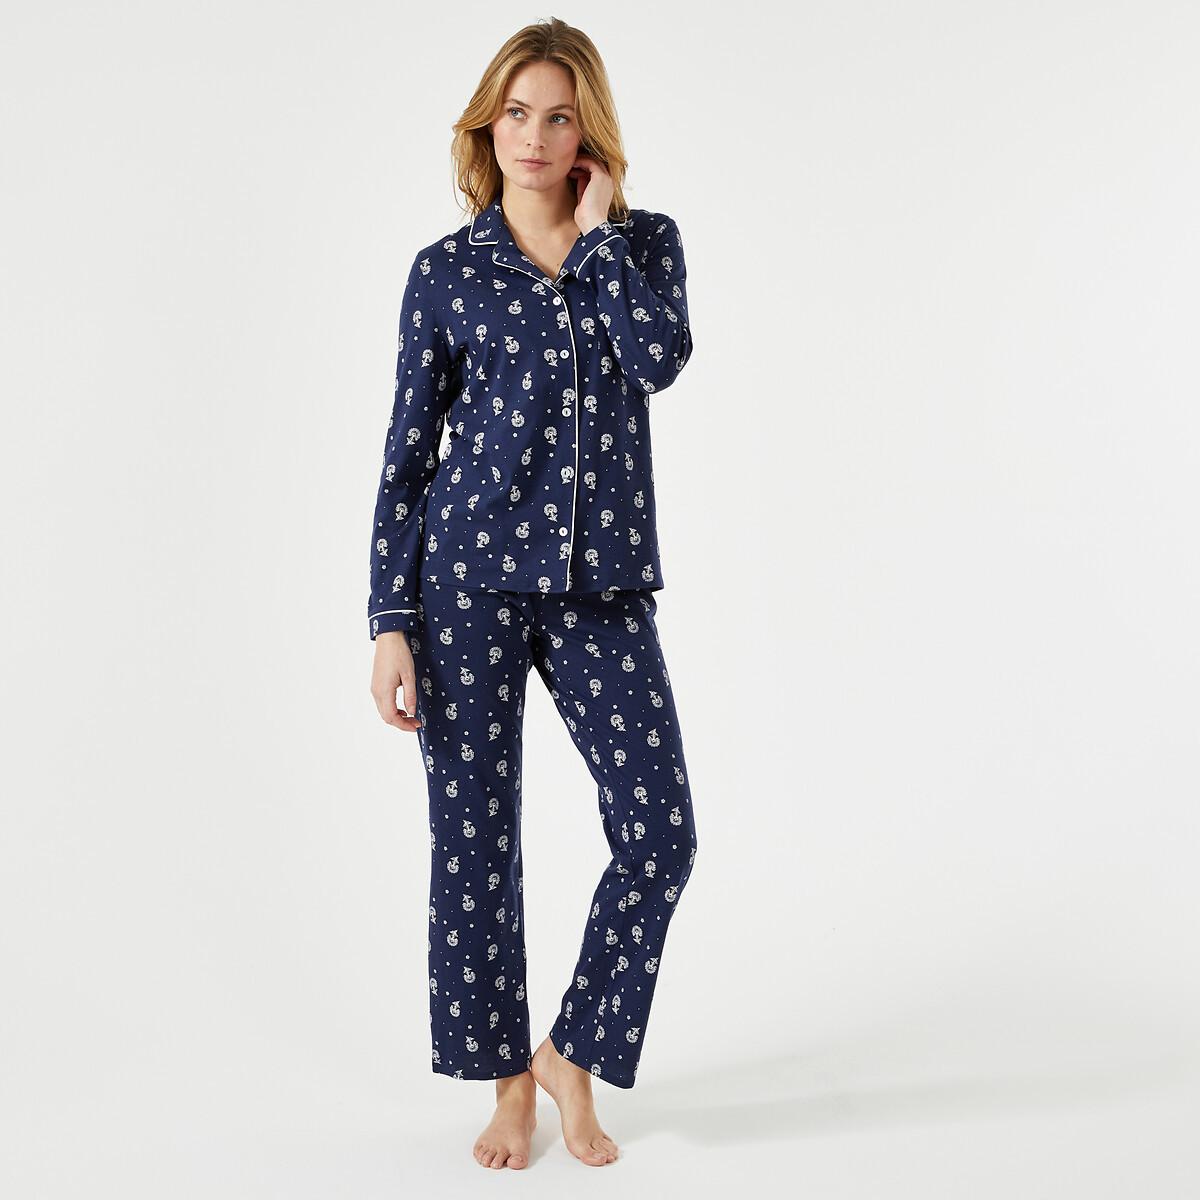 Bedruckter Pyjama Mit Langen Ärmeln Damen Weiss Bedruckt 38 von La Redoute Collections